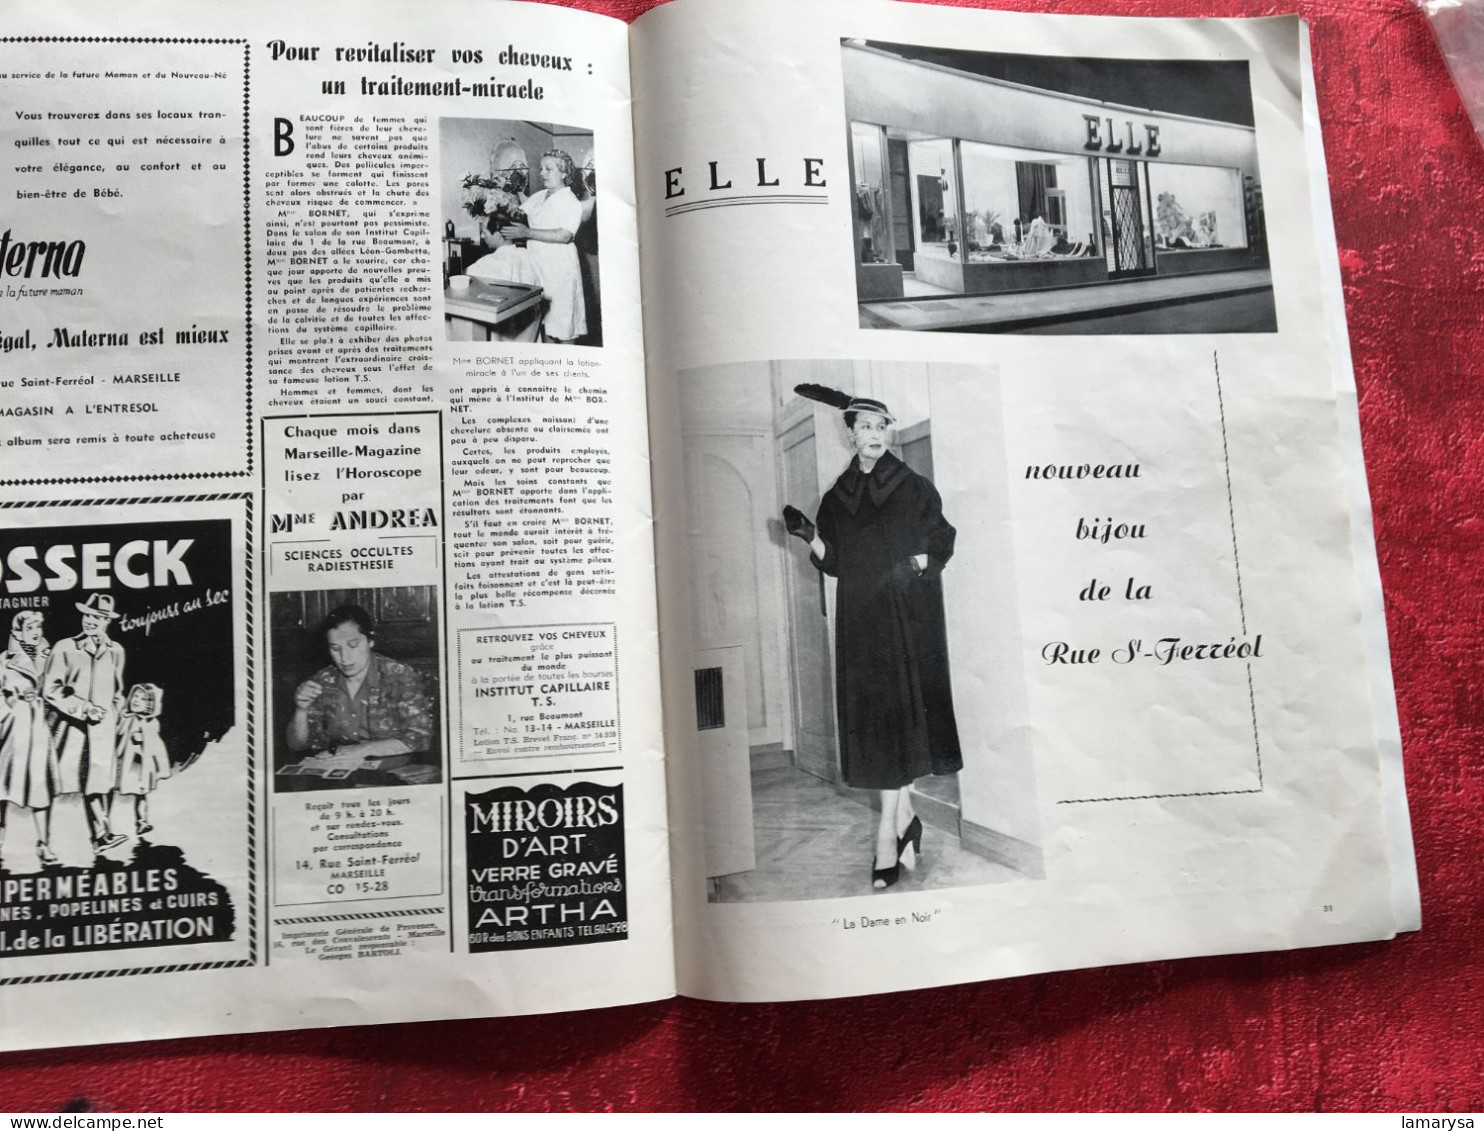 Marseille Magazine Revue en Français spécial Mode Hiver 1953/54 Livre coiffure-modèles-Biosthetique-Haute couture